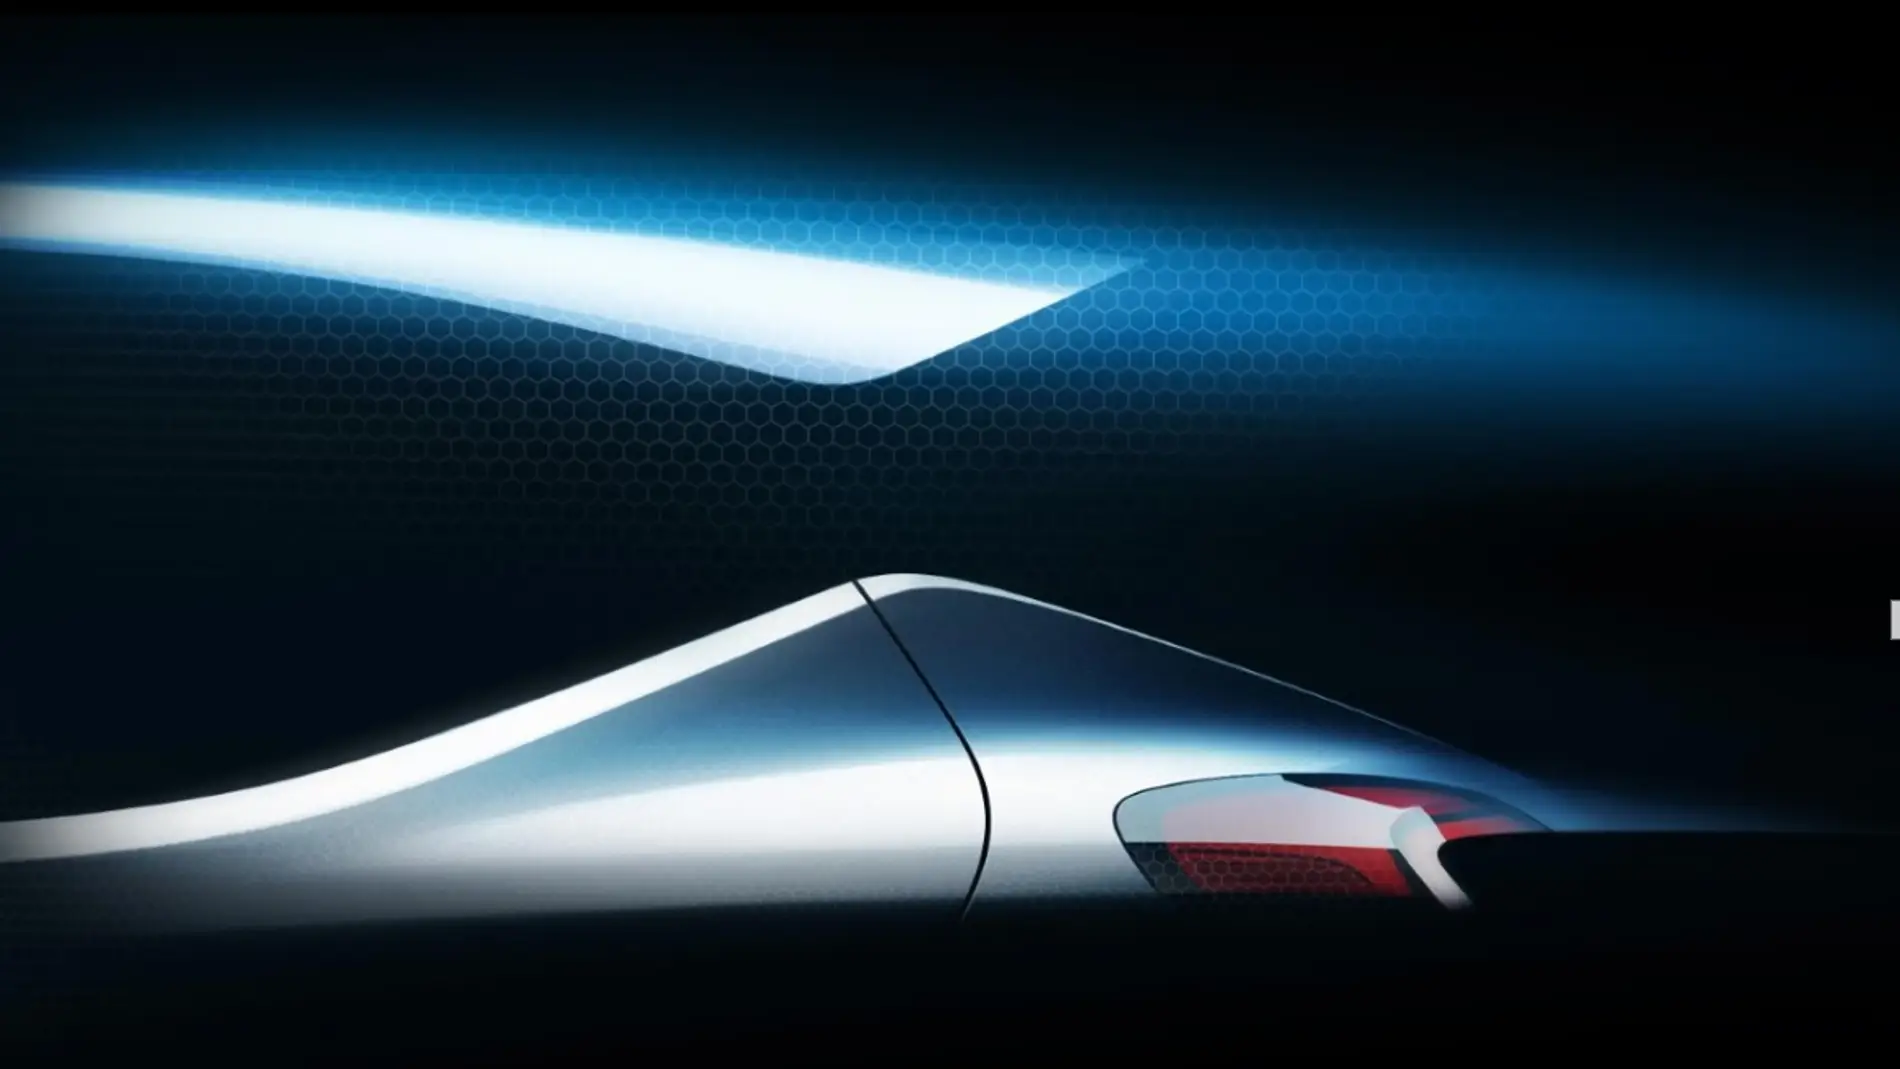 Hyundai presentará en Frankfurt su nuevo modelo